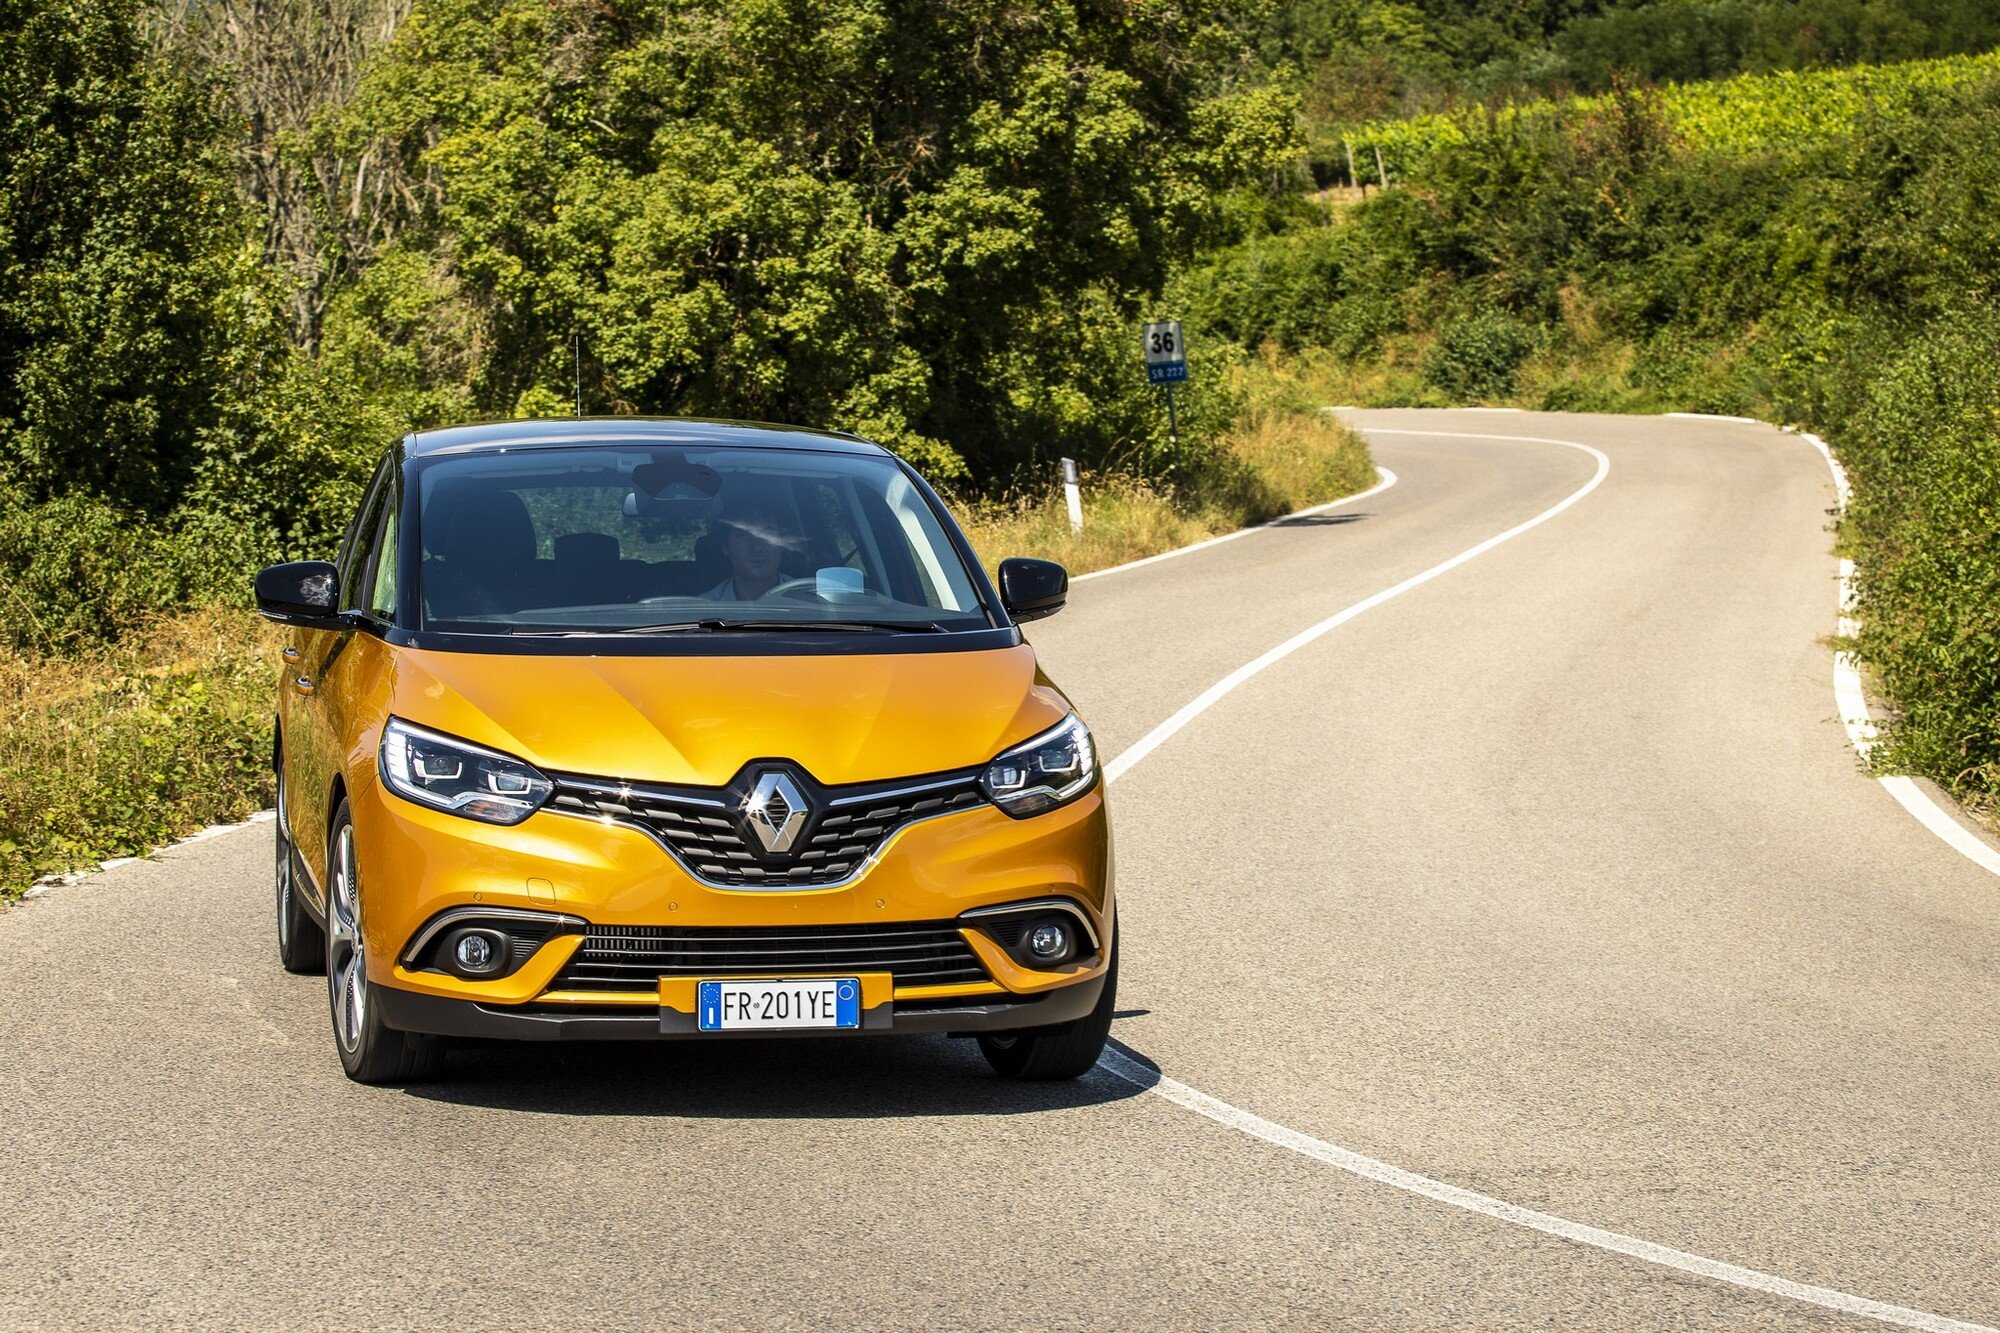 Renault Scenic, il test del nuovo 1.3 TCe da 140 e 160 CV [Video]